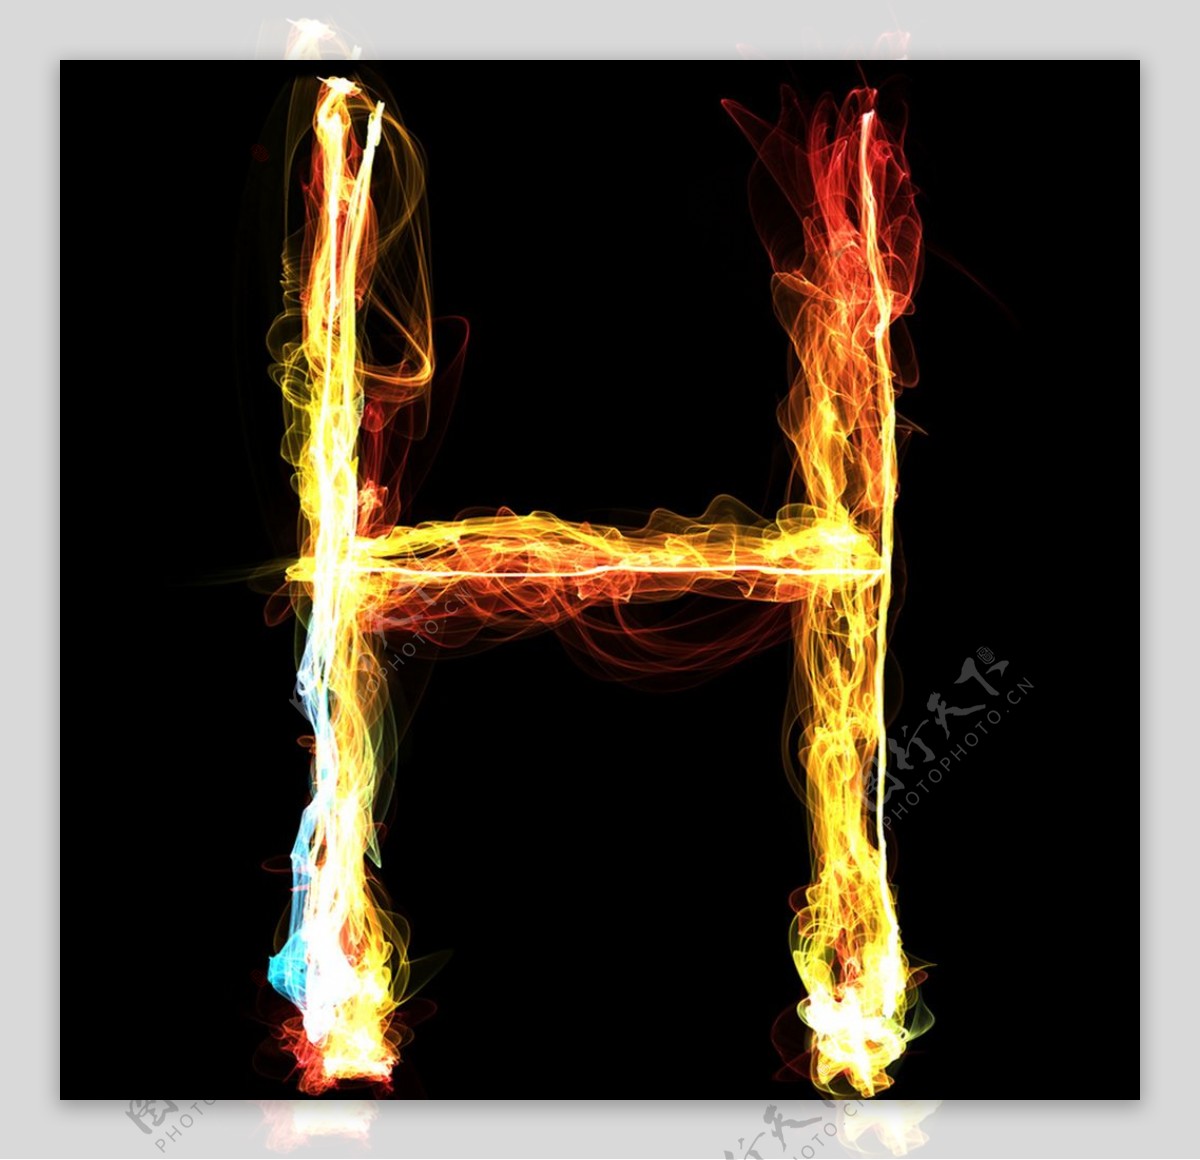 字母H火焰特效